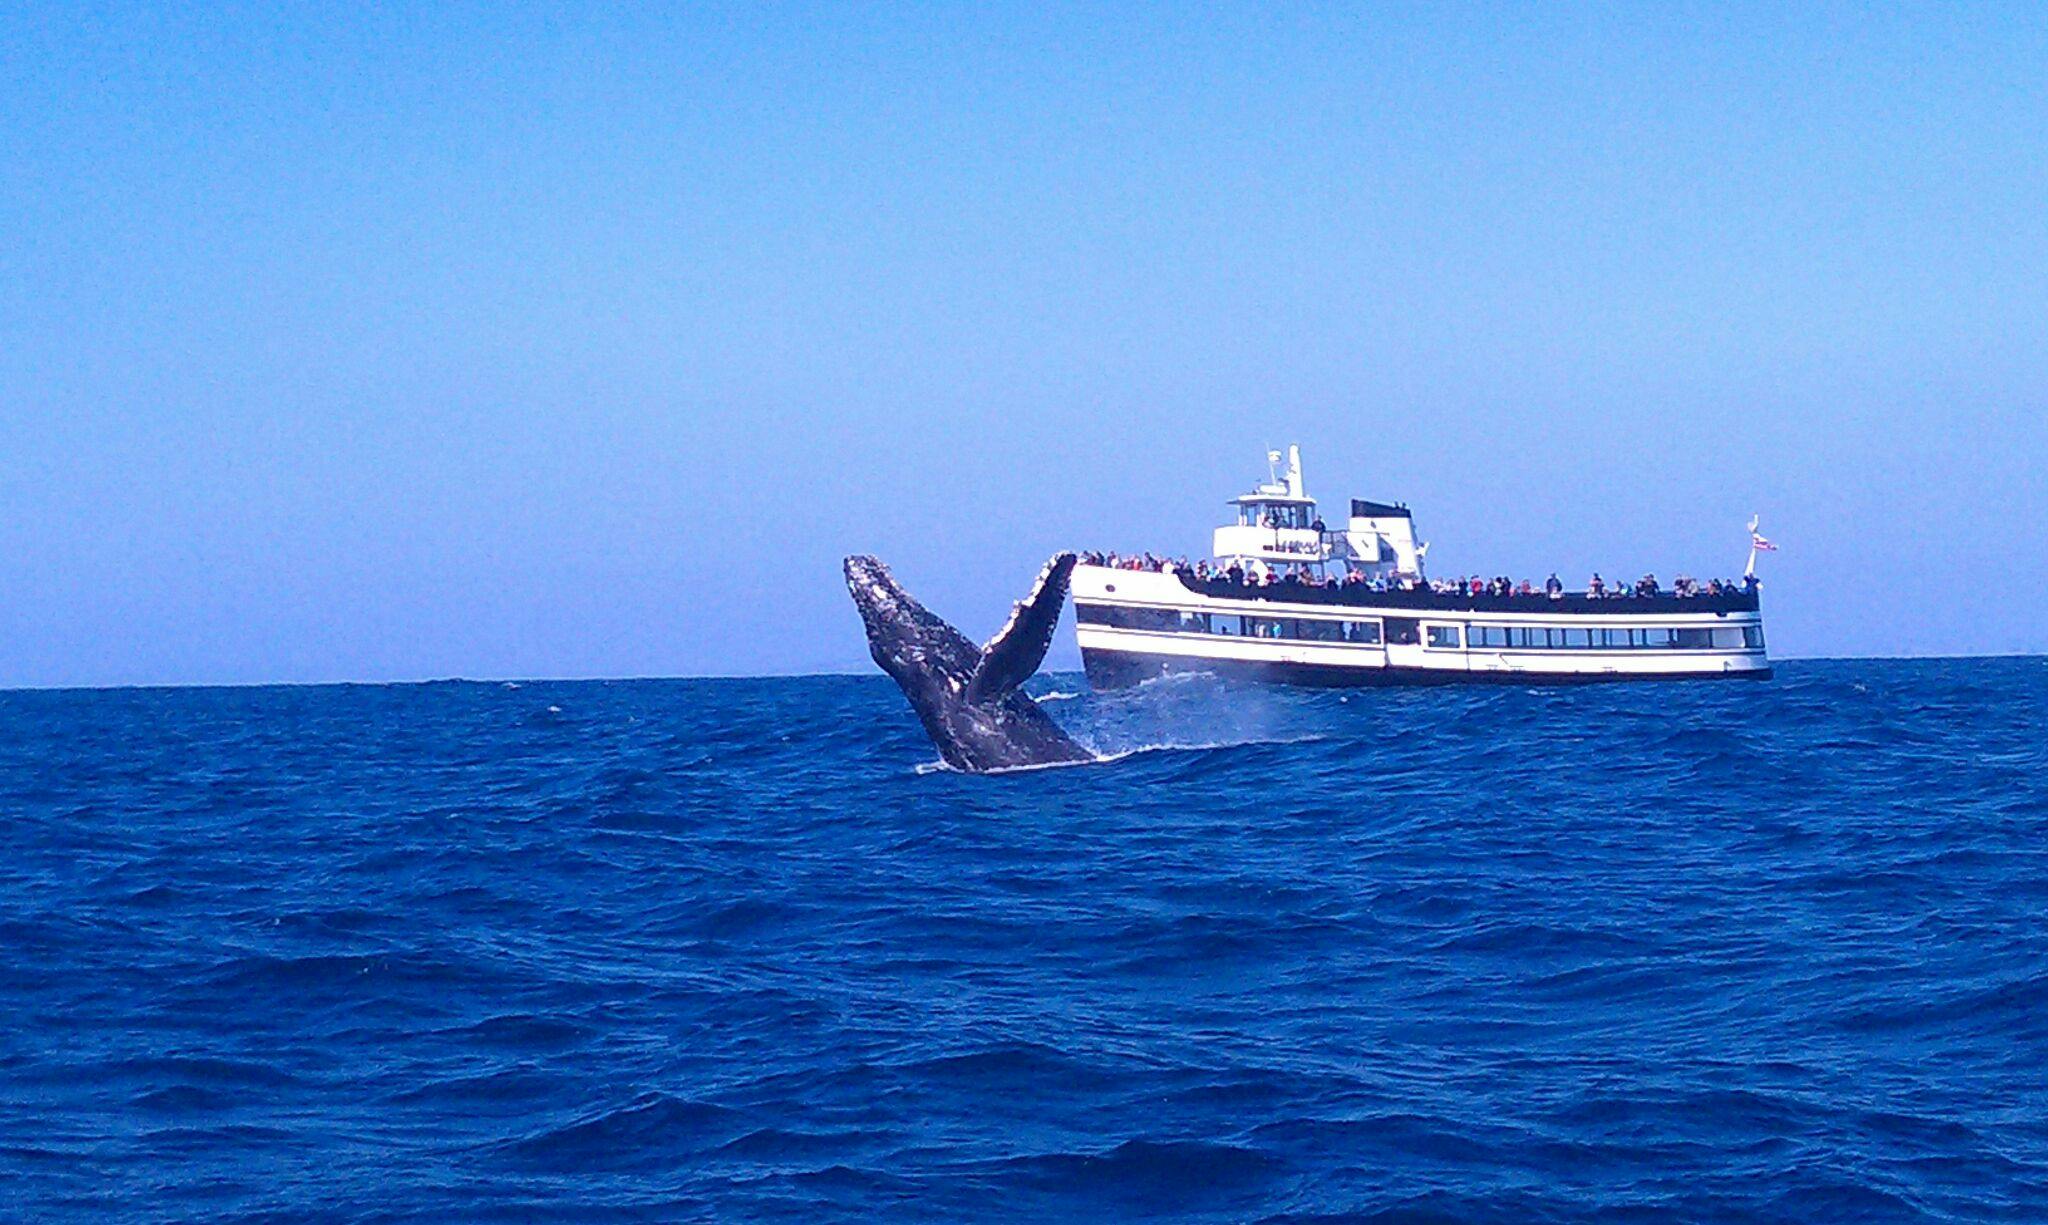 Gwarantowane obserwowanie wielorybów w San Diego